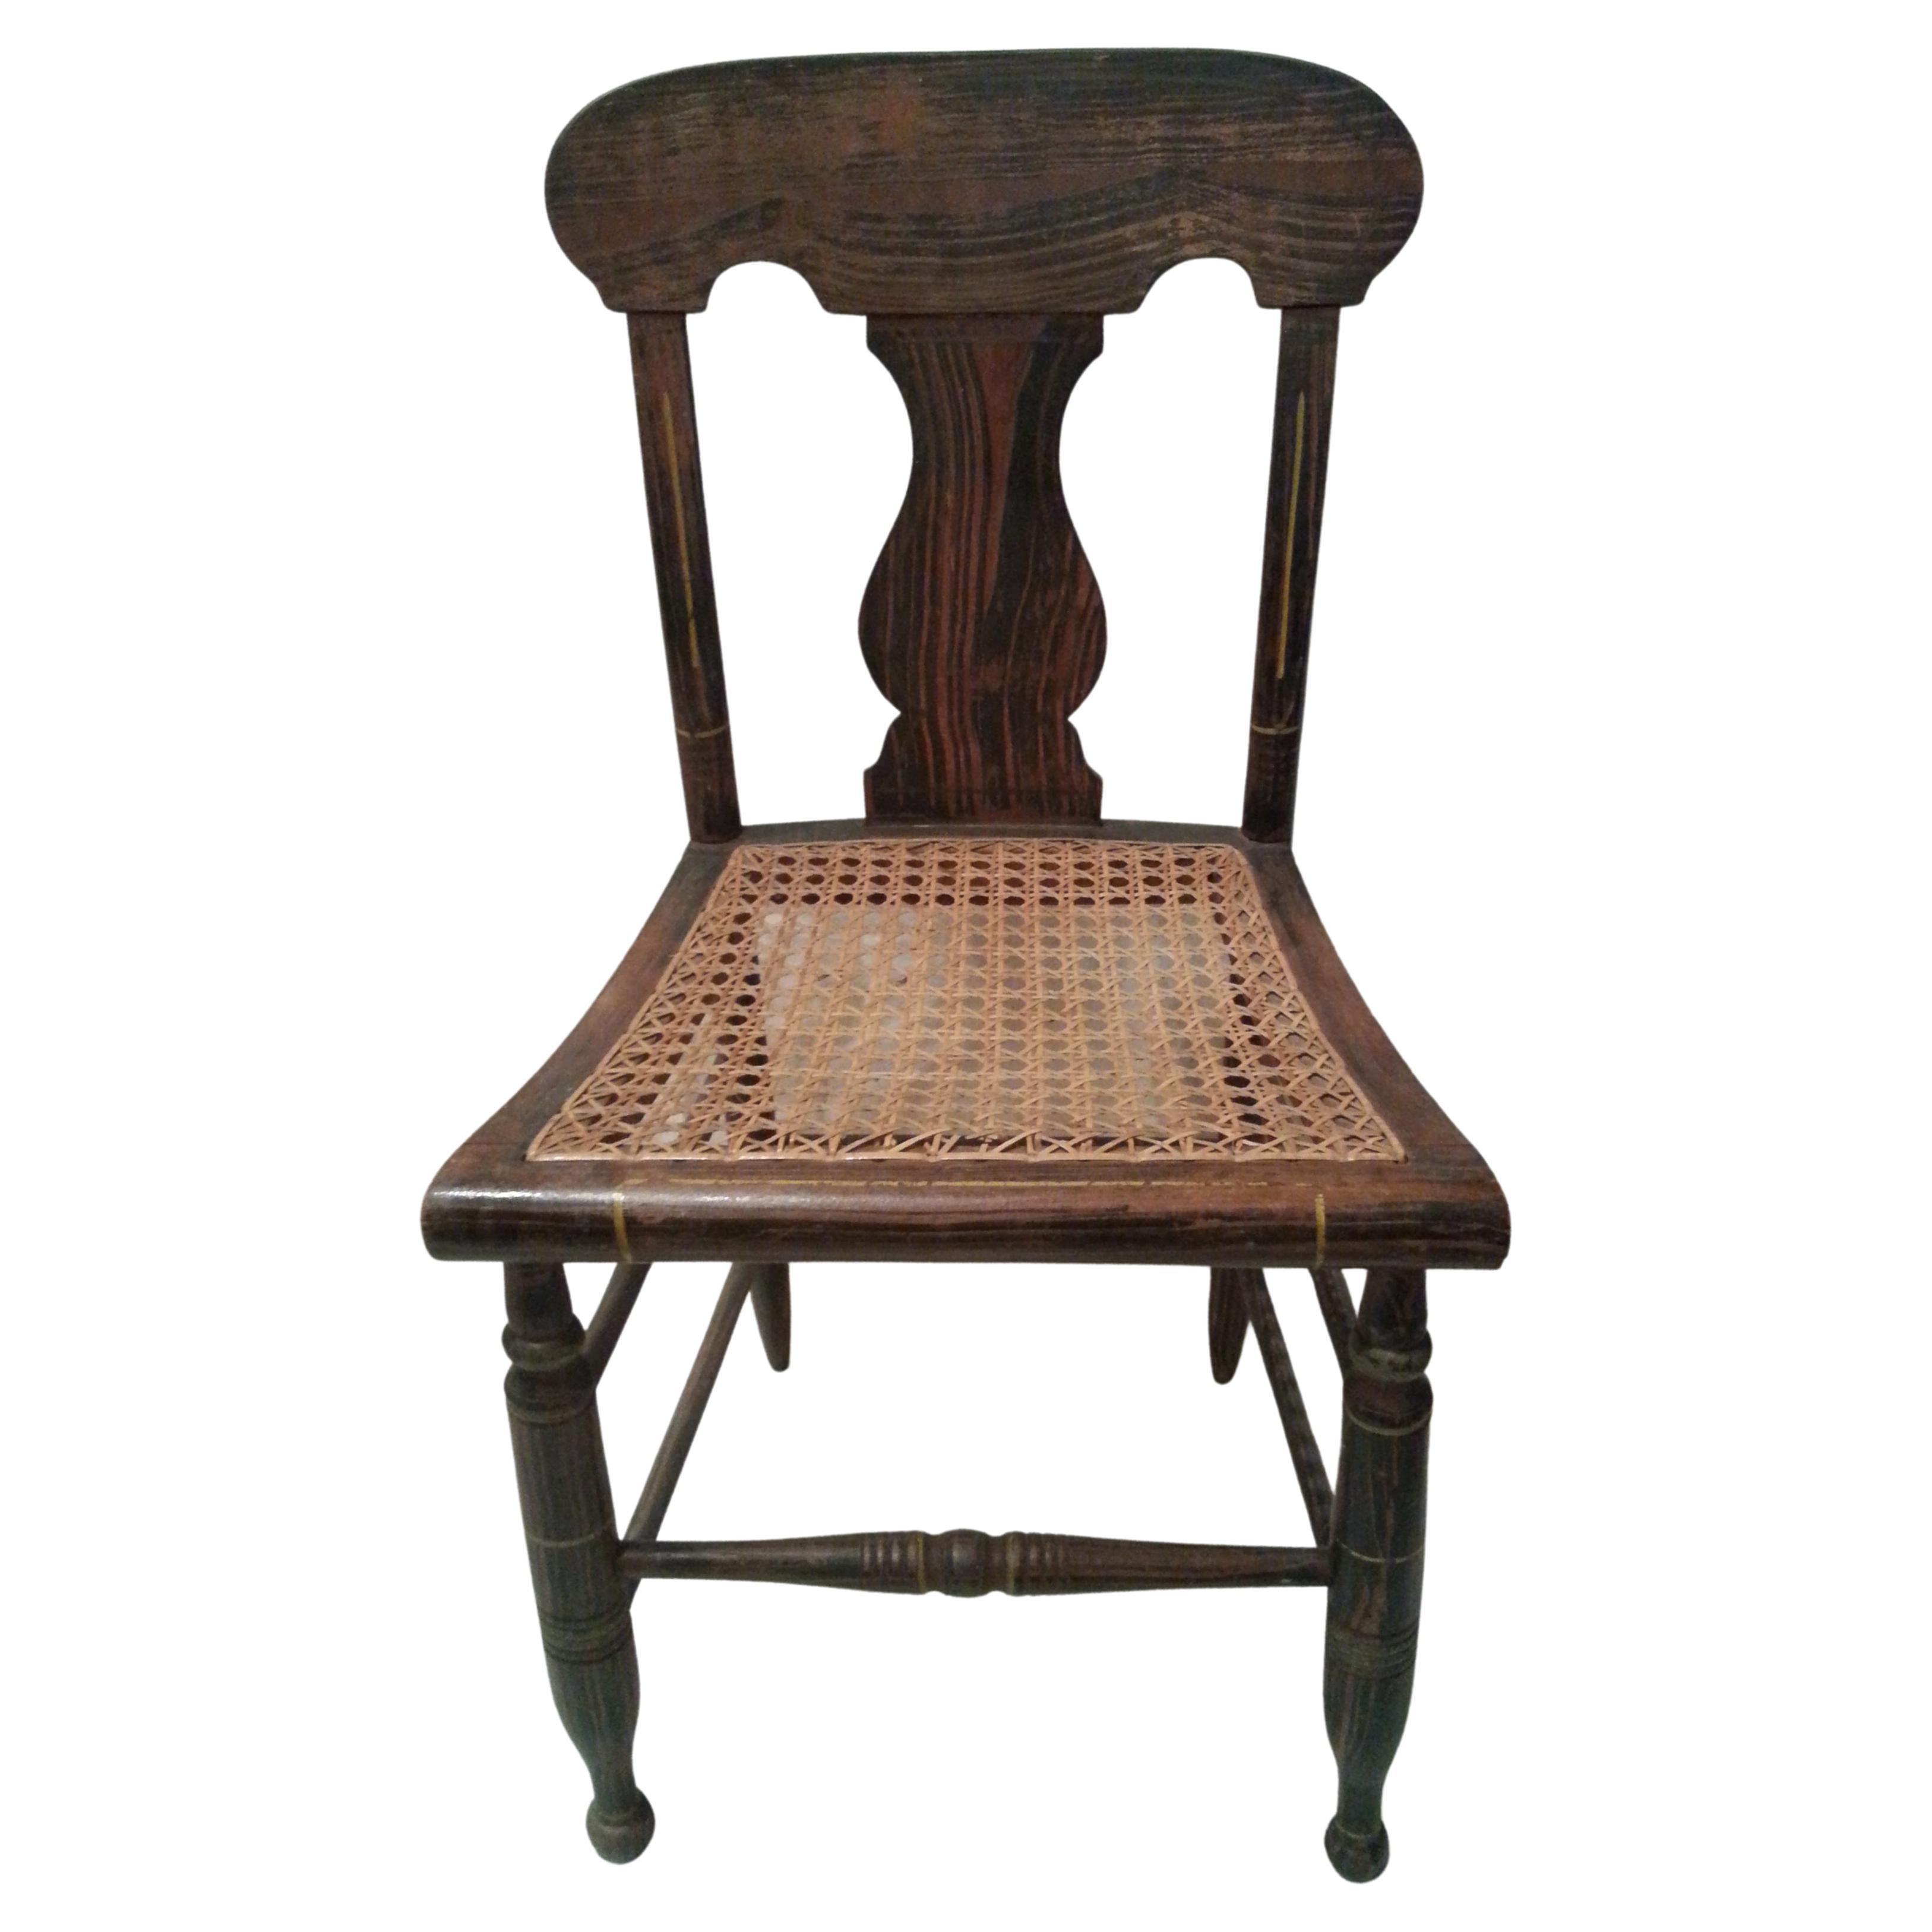 Chaise d'appoint du 19ème siècle peinte à la graine avec assise en rotin